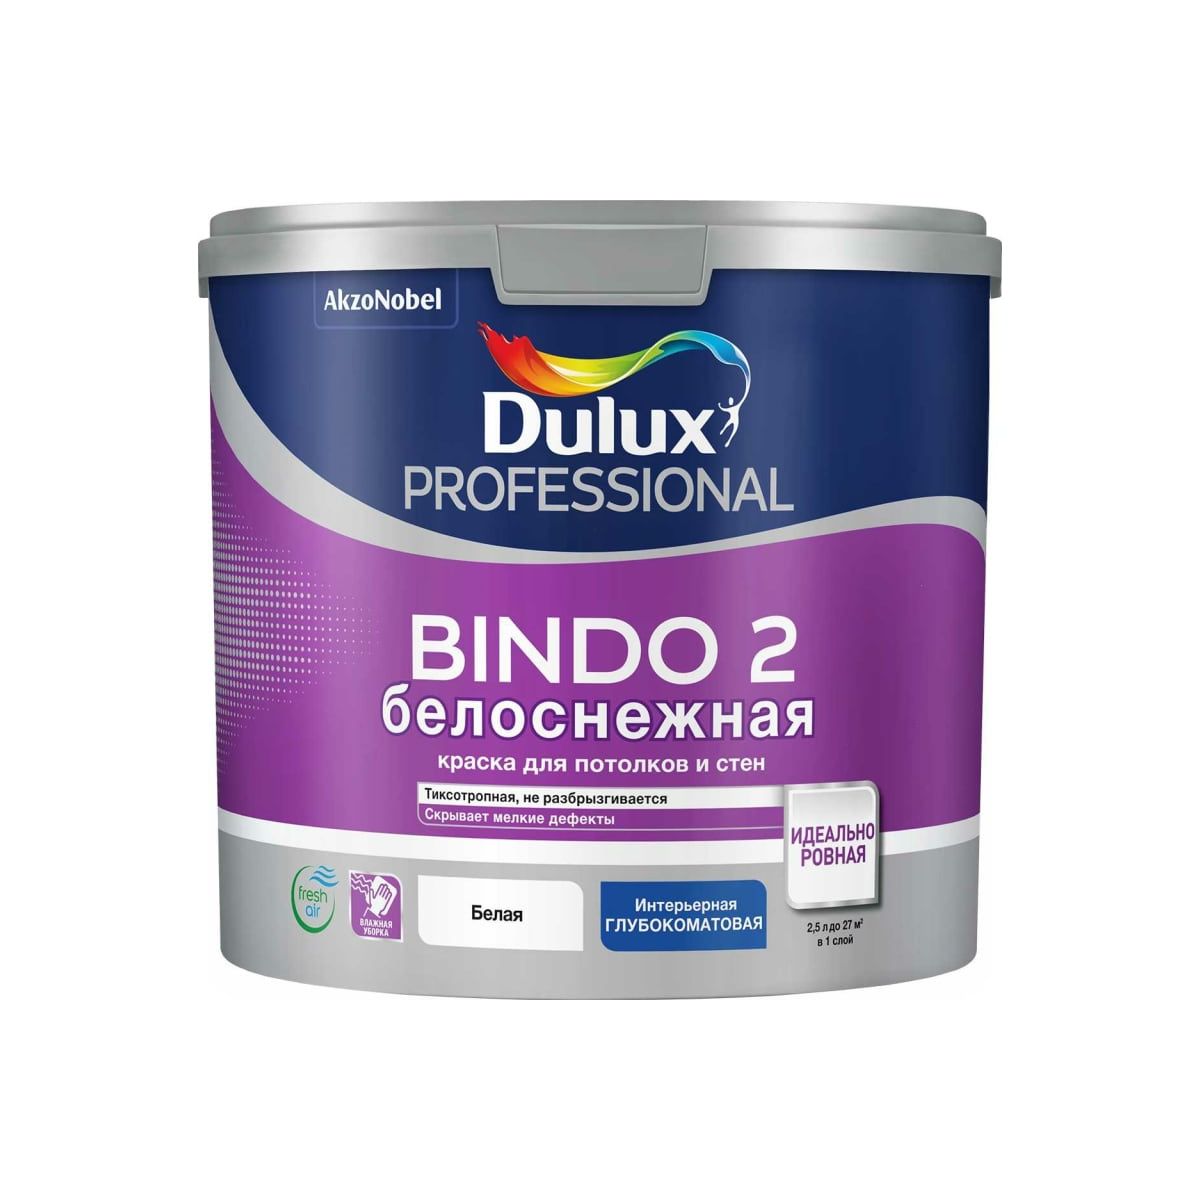 фото Краска для стен и потолков dulux professional bindo 2 белоснежная, глубокоматовая, 2,5 л